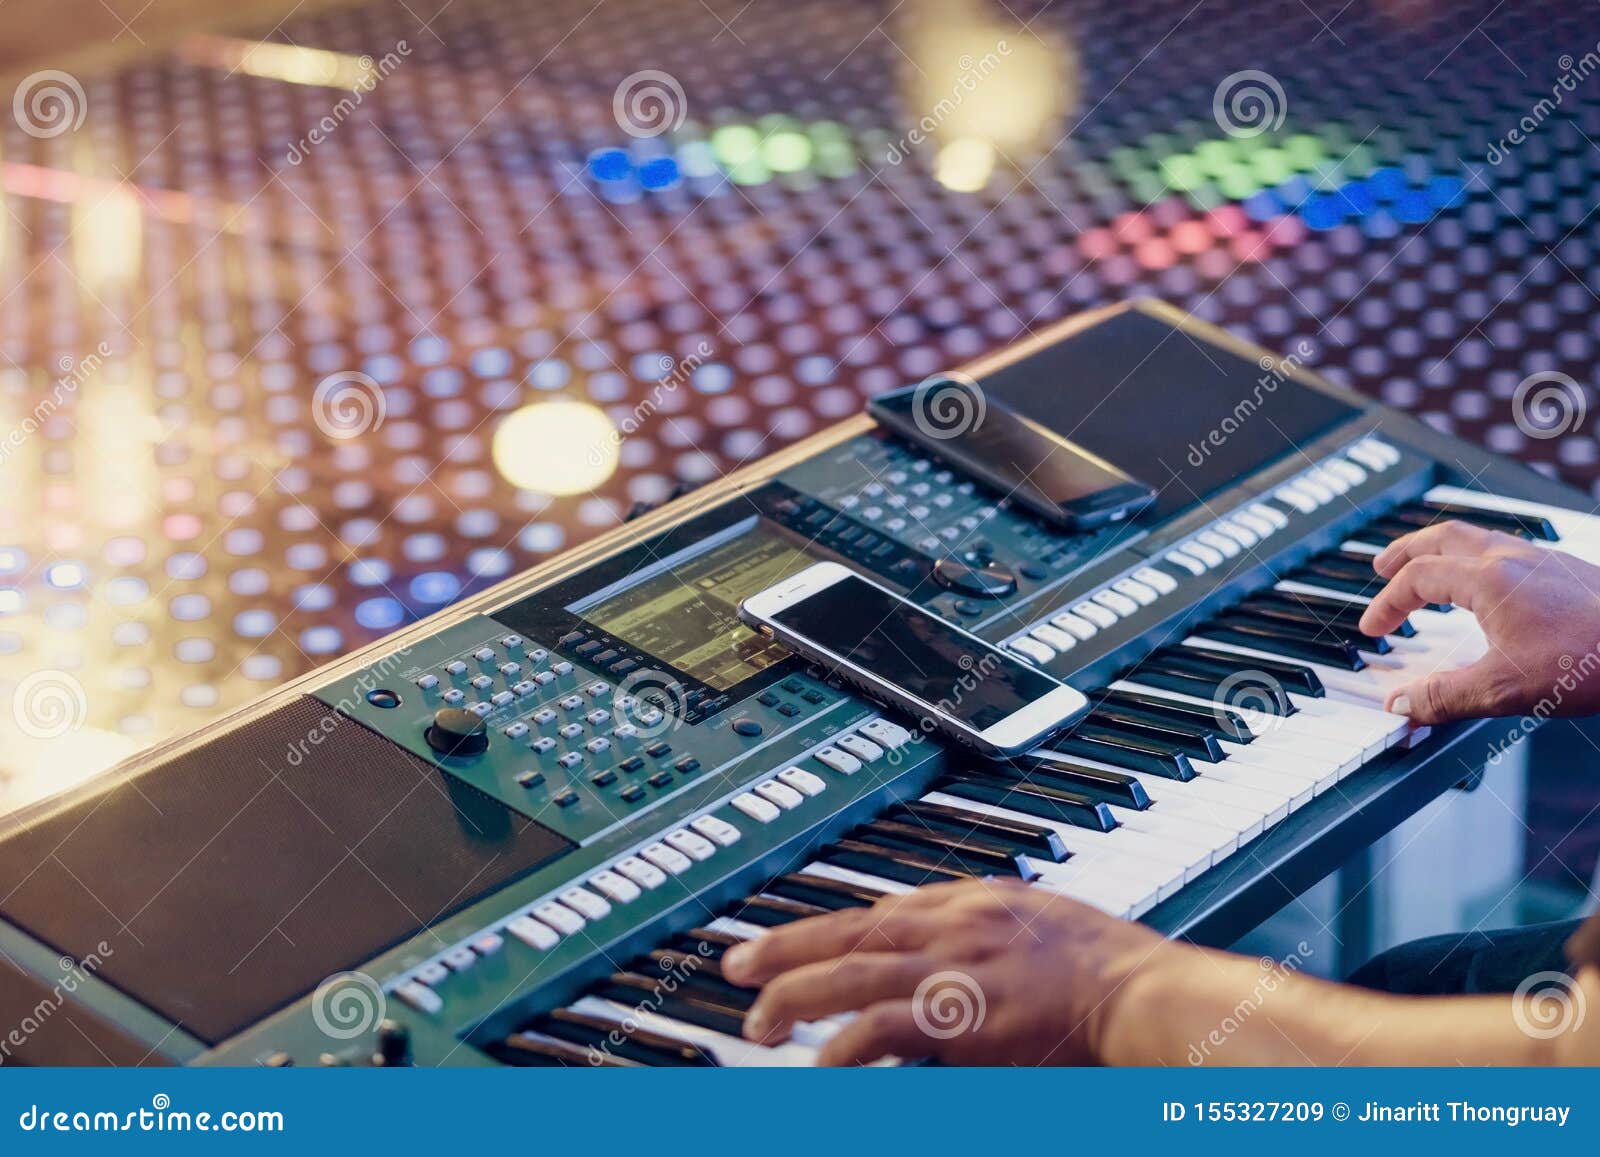 Музыкант сыграть электронные синтезаторы клавиатуры путем использование смартфона как директивы для игры на этапе концерта r. Музыкант сыграть электронные синтезаторы клавиатуры путем использование смартфона как директивы для игры на этапе концерта Выборочный фокус на смартфоне